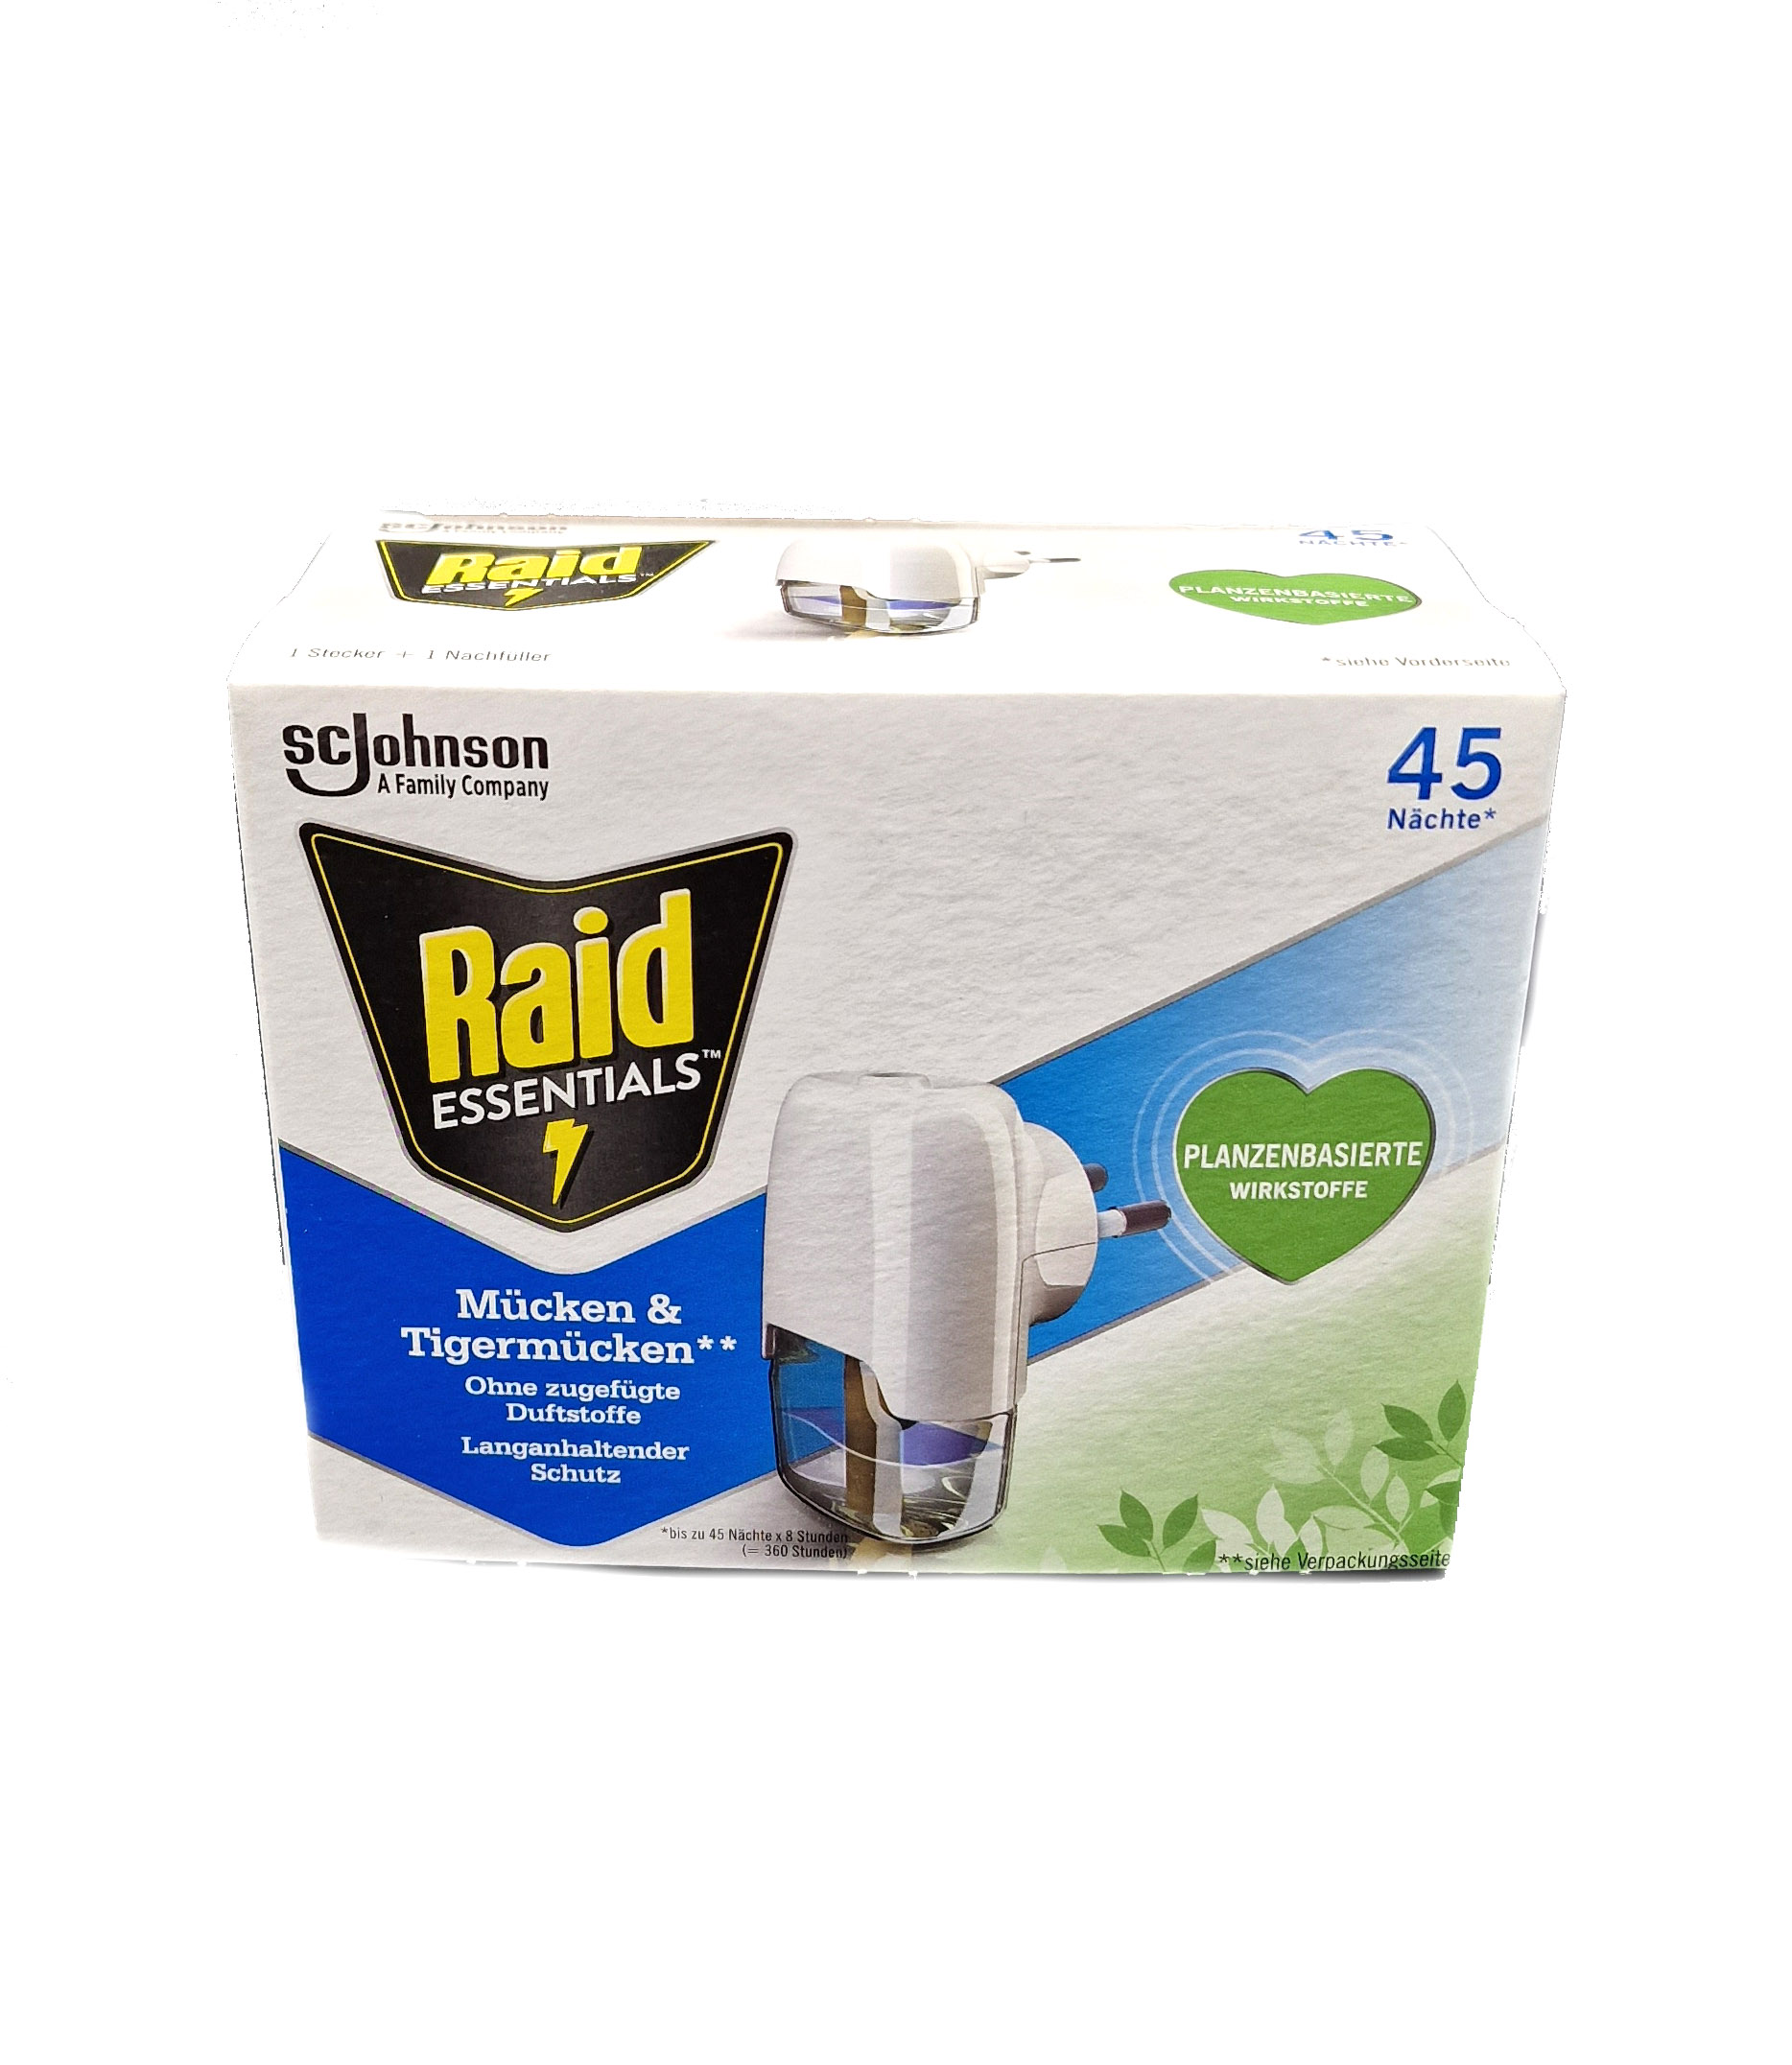 Raid Essentials Mücken-Stecker 45 Nächte, 32 ml